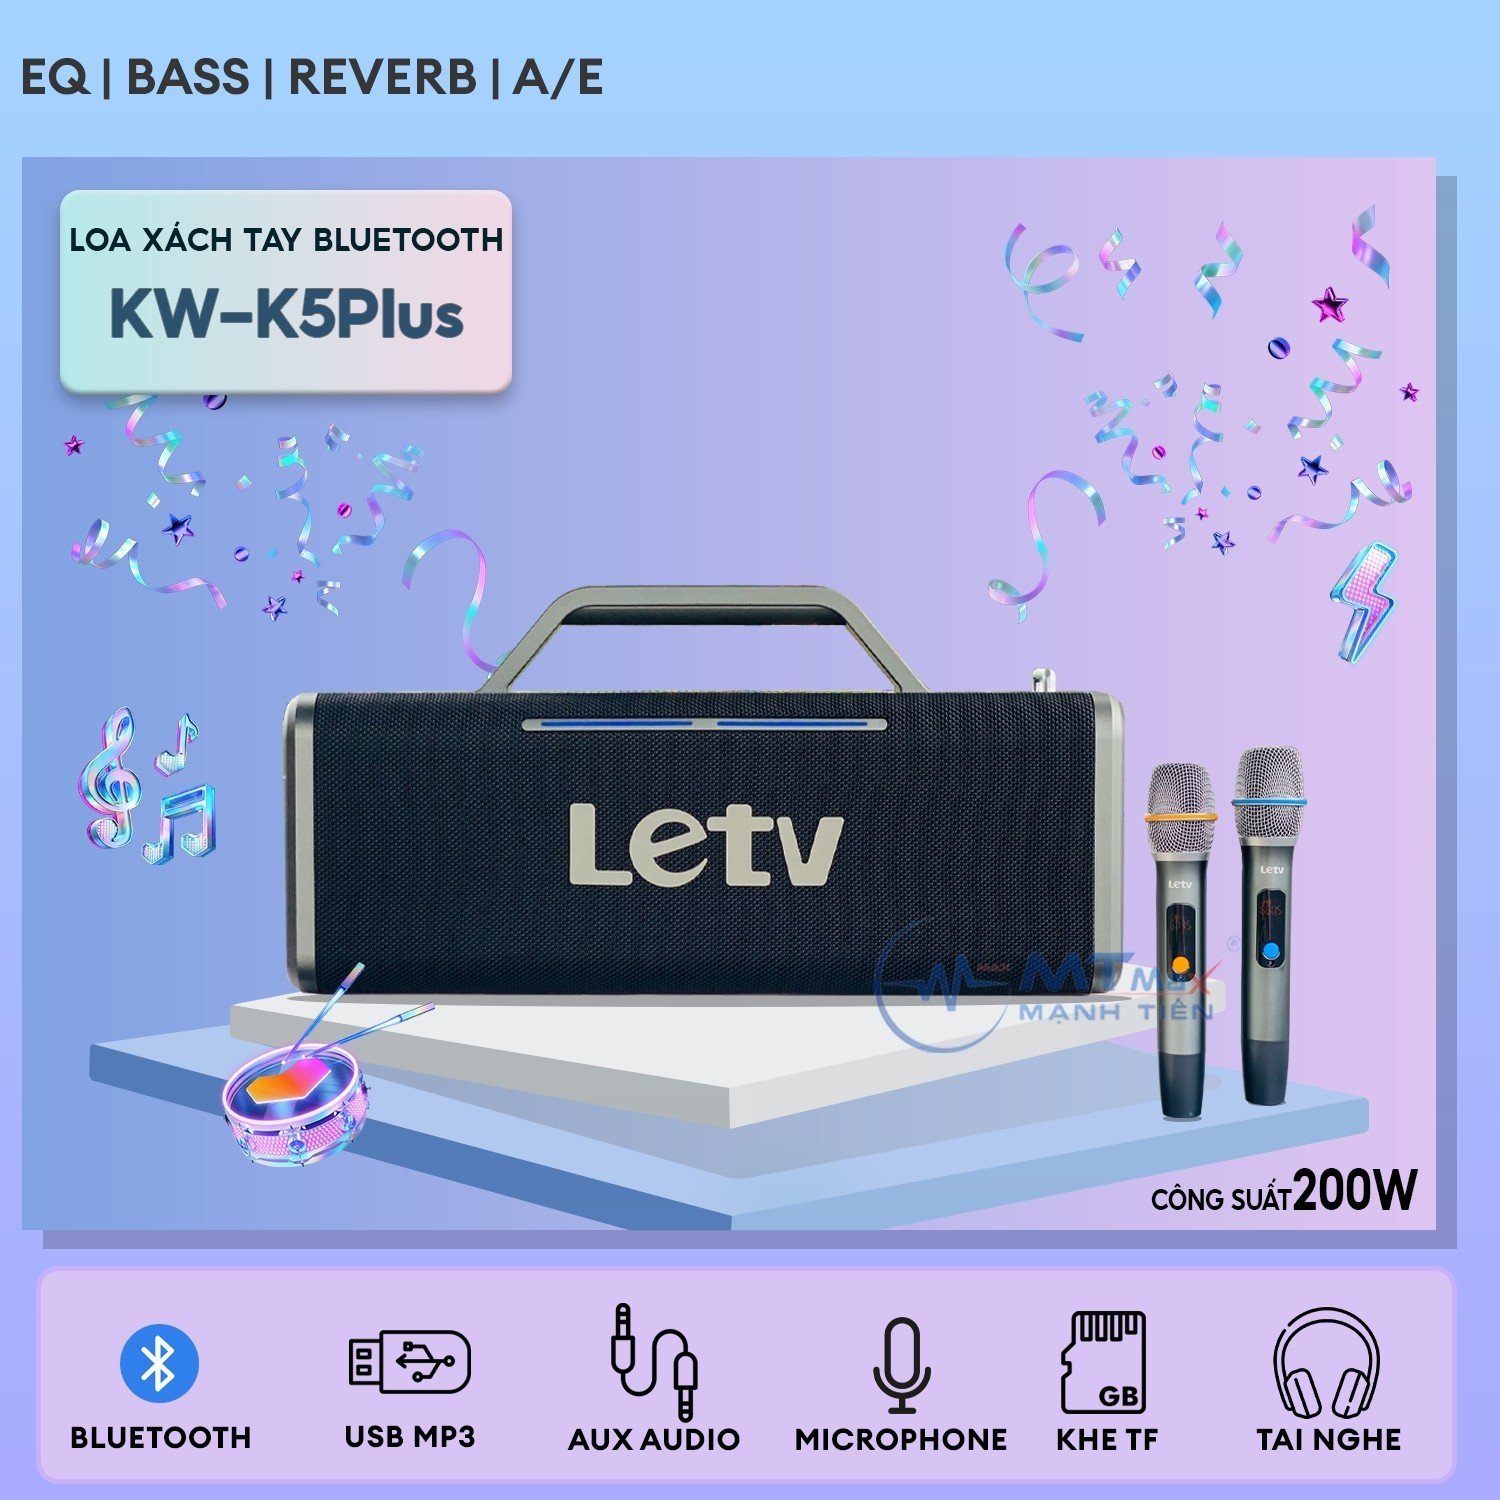 Loa Xách Tay Bluetooth KW K5Plus - Công Suất Cực Lớn 200W, Sử Dụng Liên Tục Đến 8 Giờ, Đèn LED RGB Nhiều Chế Độ, Âm Thanh Siêu Khủng, Tặng Kèm Micro Không Dây Karaoke.  hàng chính hãng